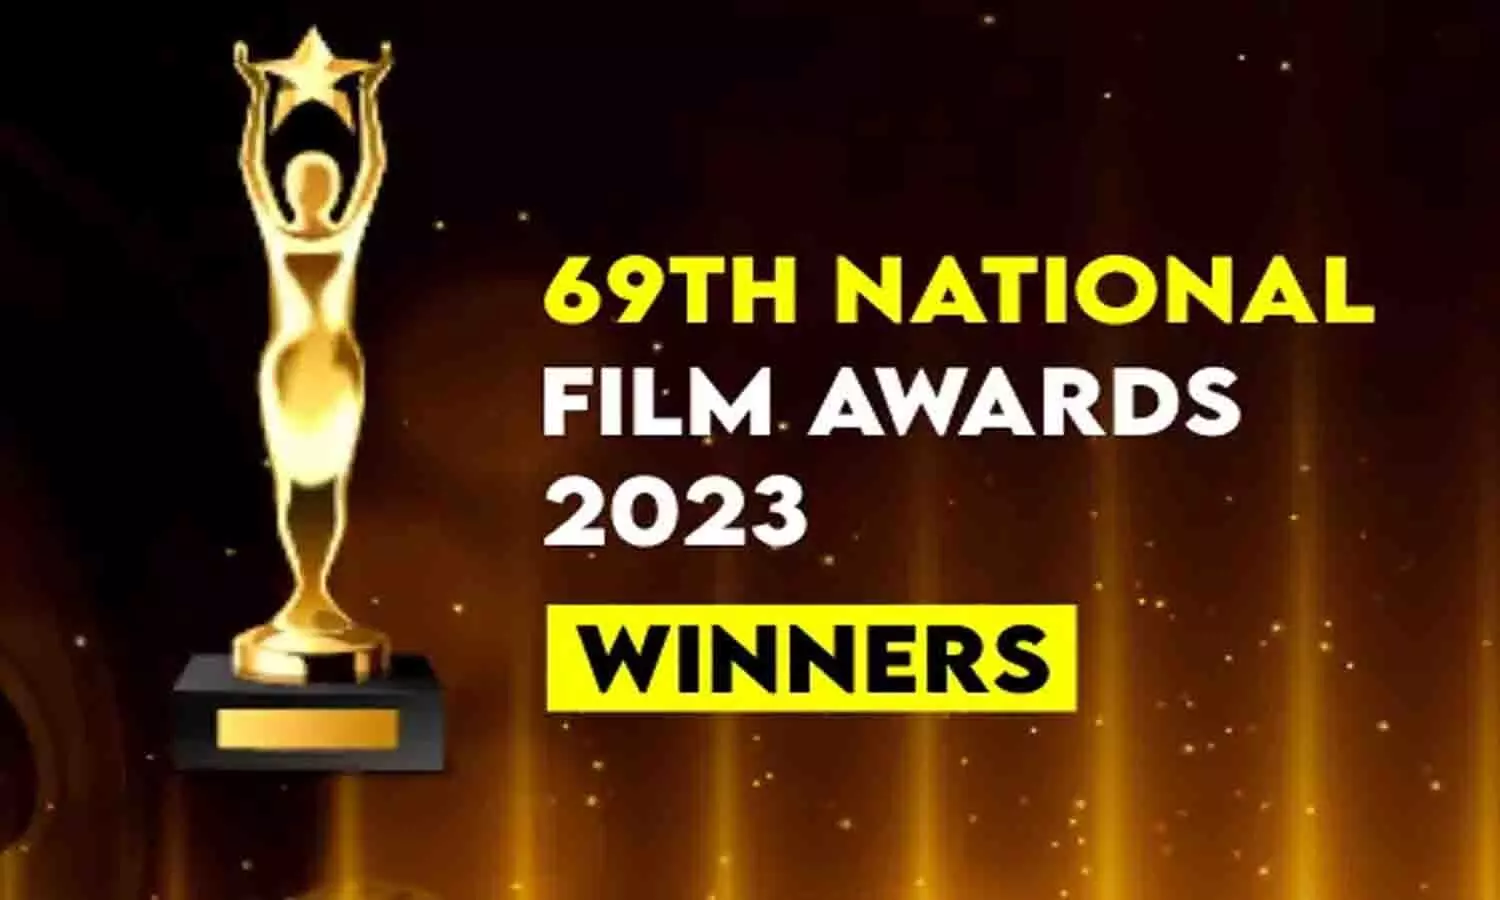 69th National Film Awards Winner List 2023: आलिया भट्ट, कृति सेनन, अल्लू अर्जुन को मिला अवार्ड, ये है पूरी विनर लिस्ट